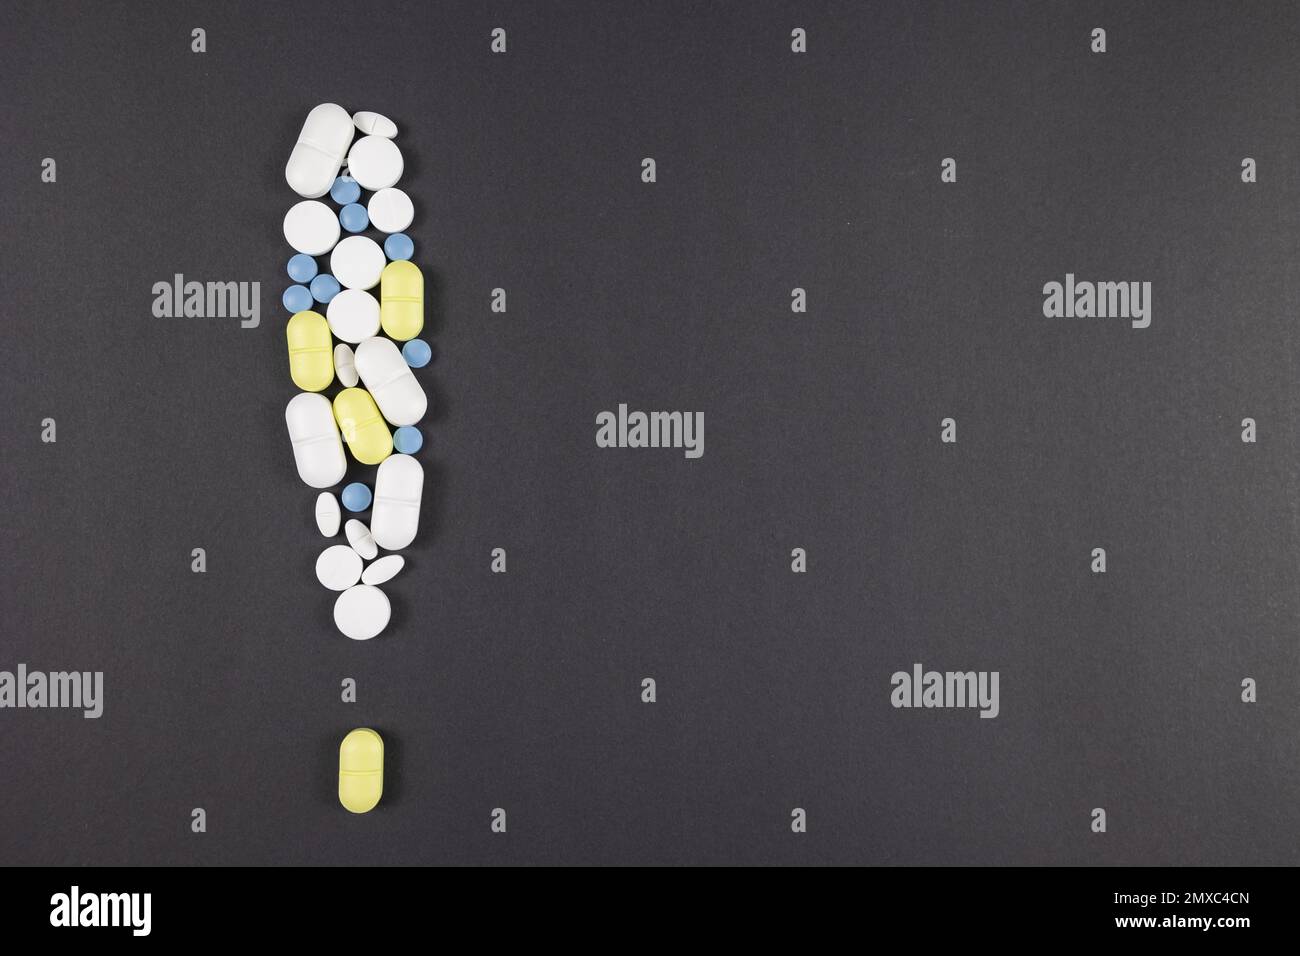 Warnschild mit Pillen und Medikamenten auf schwarzem oder grauem Hintergrund. Nebenwirkungen von Medikamenten oder toxischen Medikamenten Konzeptfoto. Stockfoto